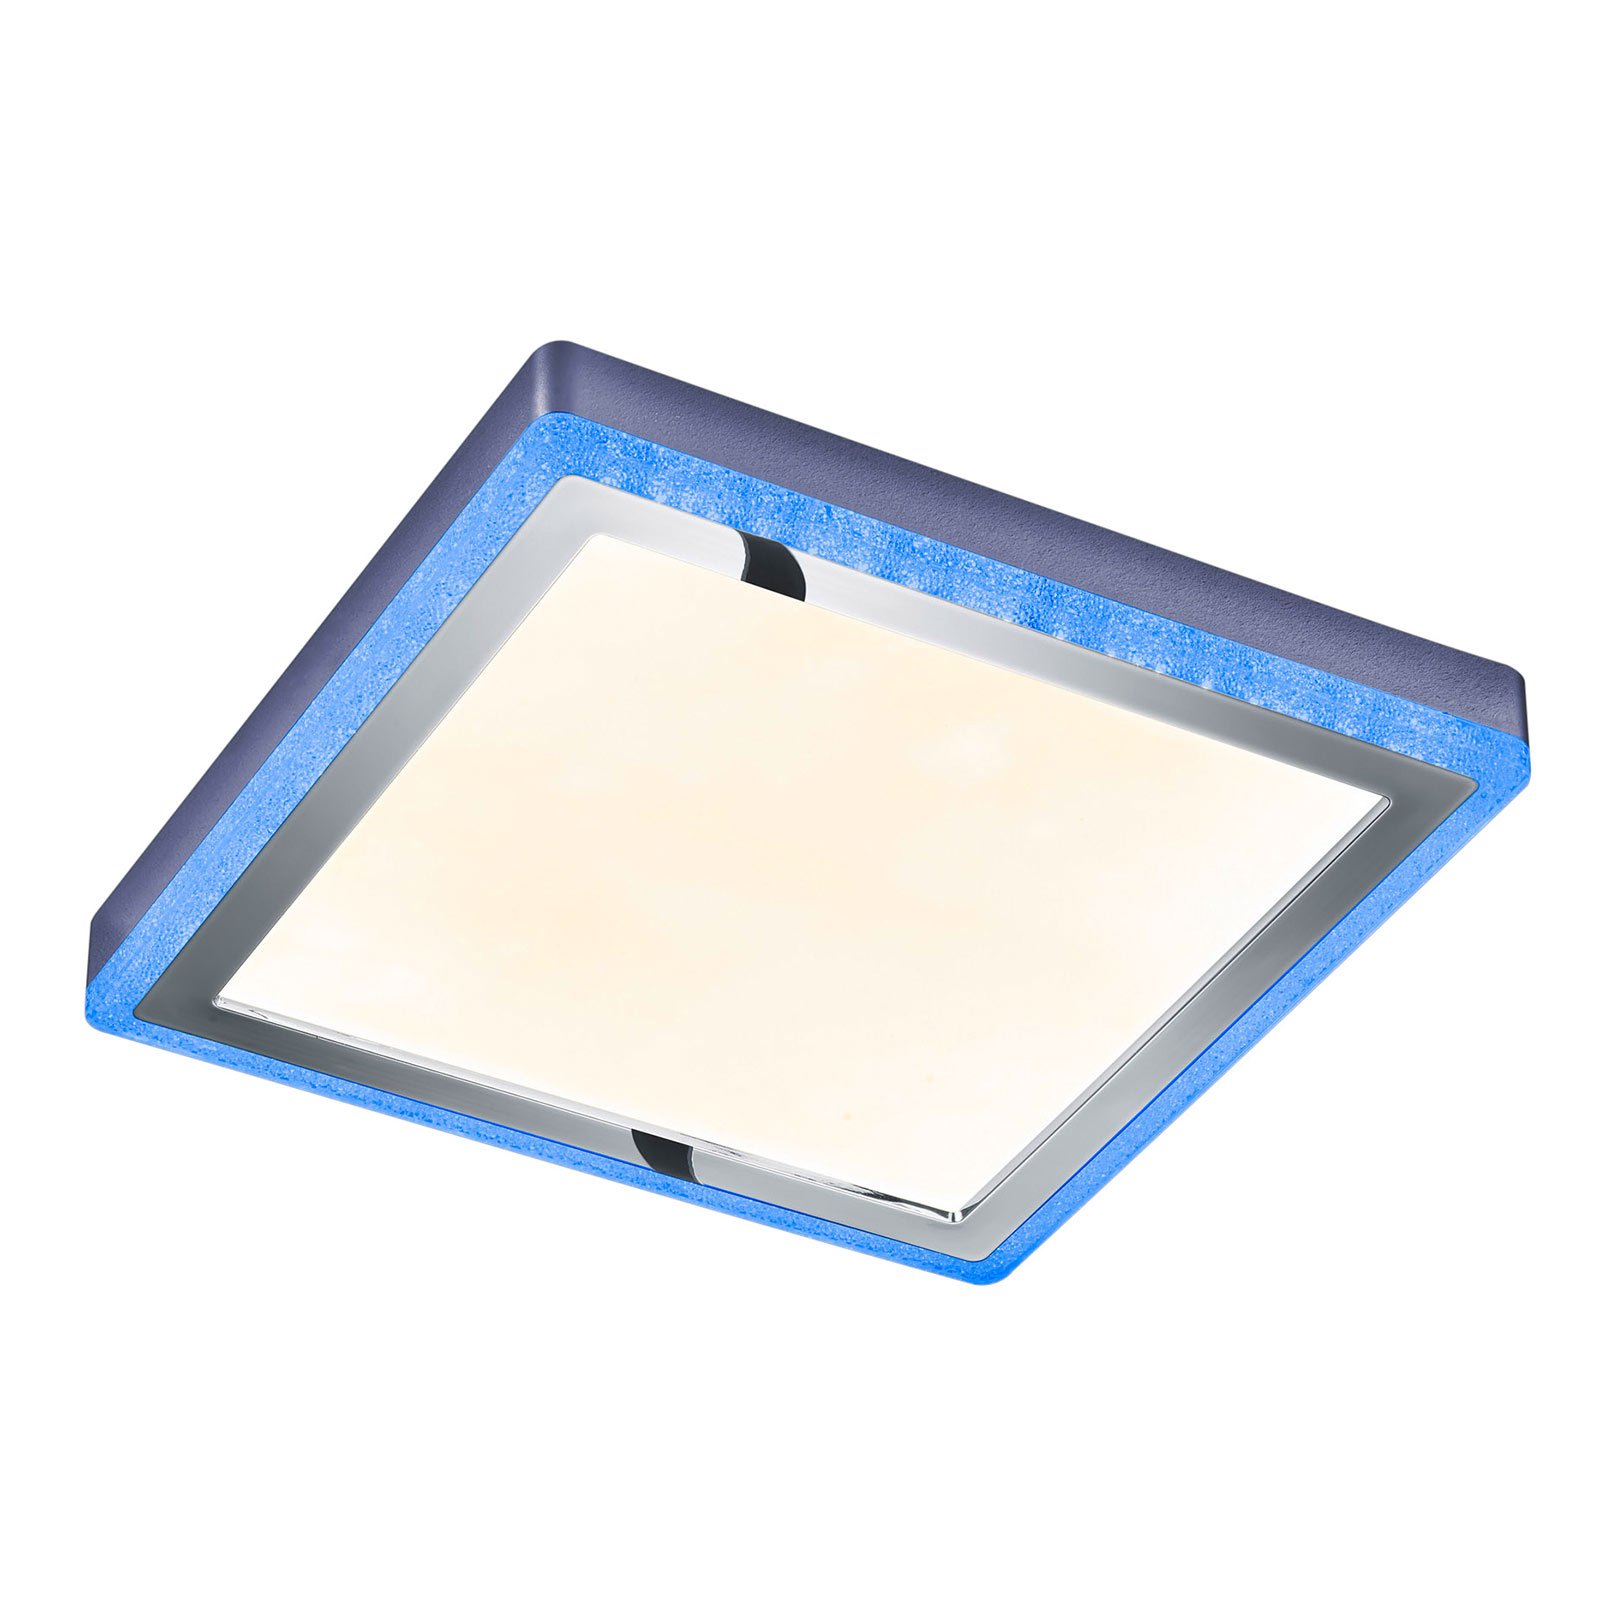 LED-Deckenleuchte Slide, weiß, eckig, 40x40 cm